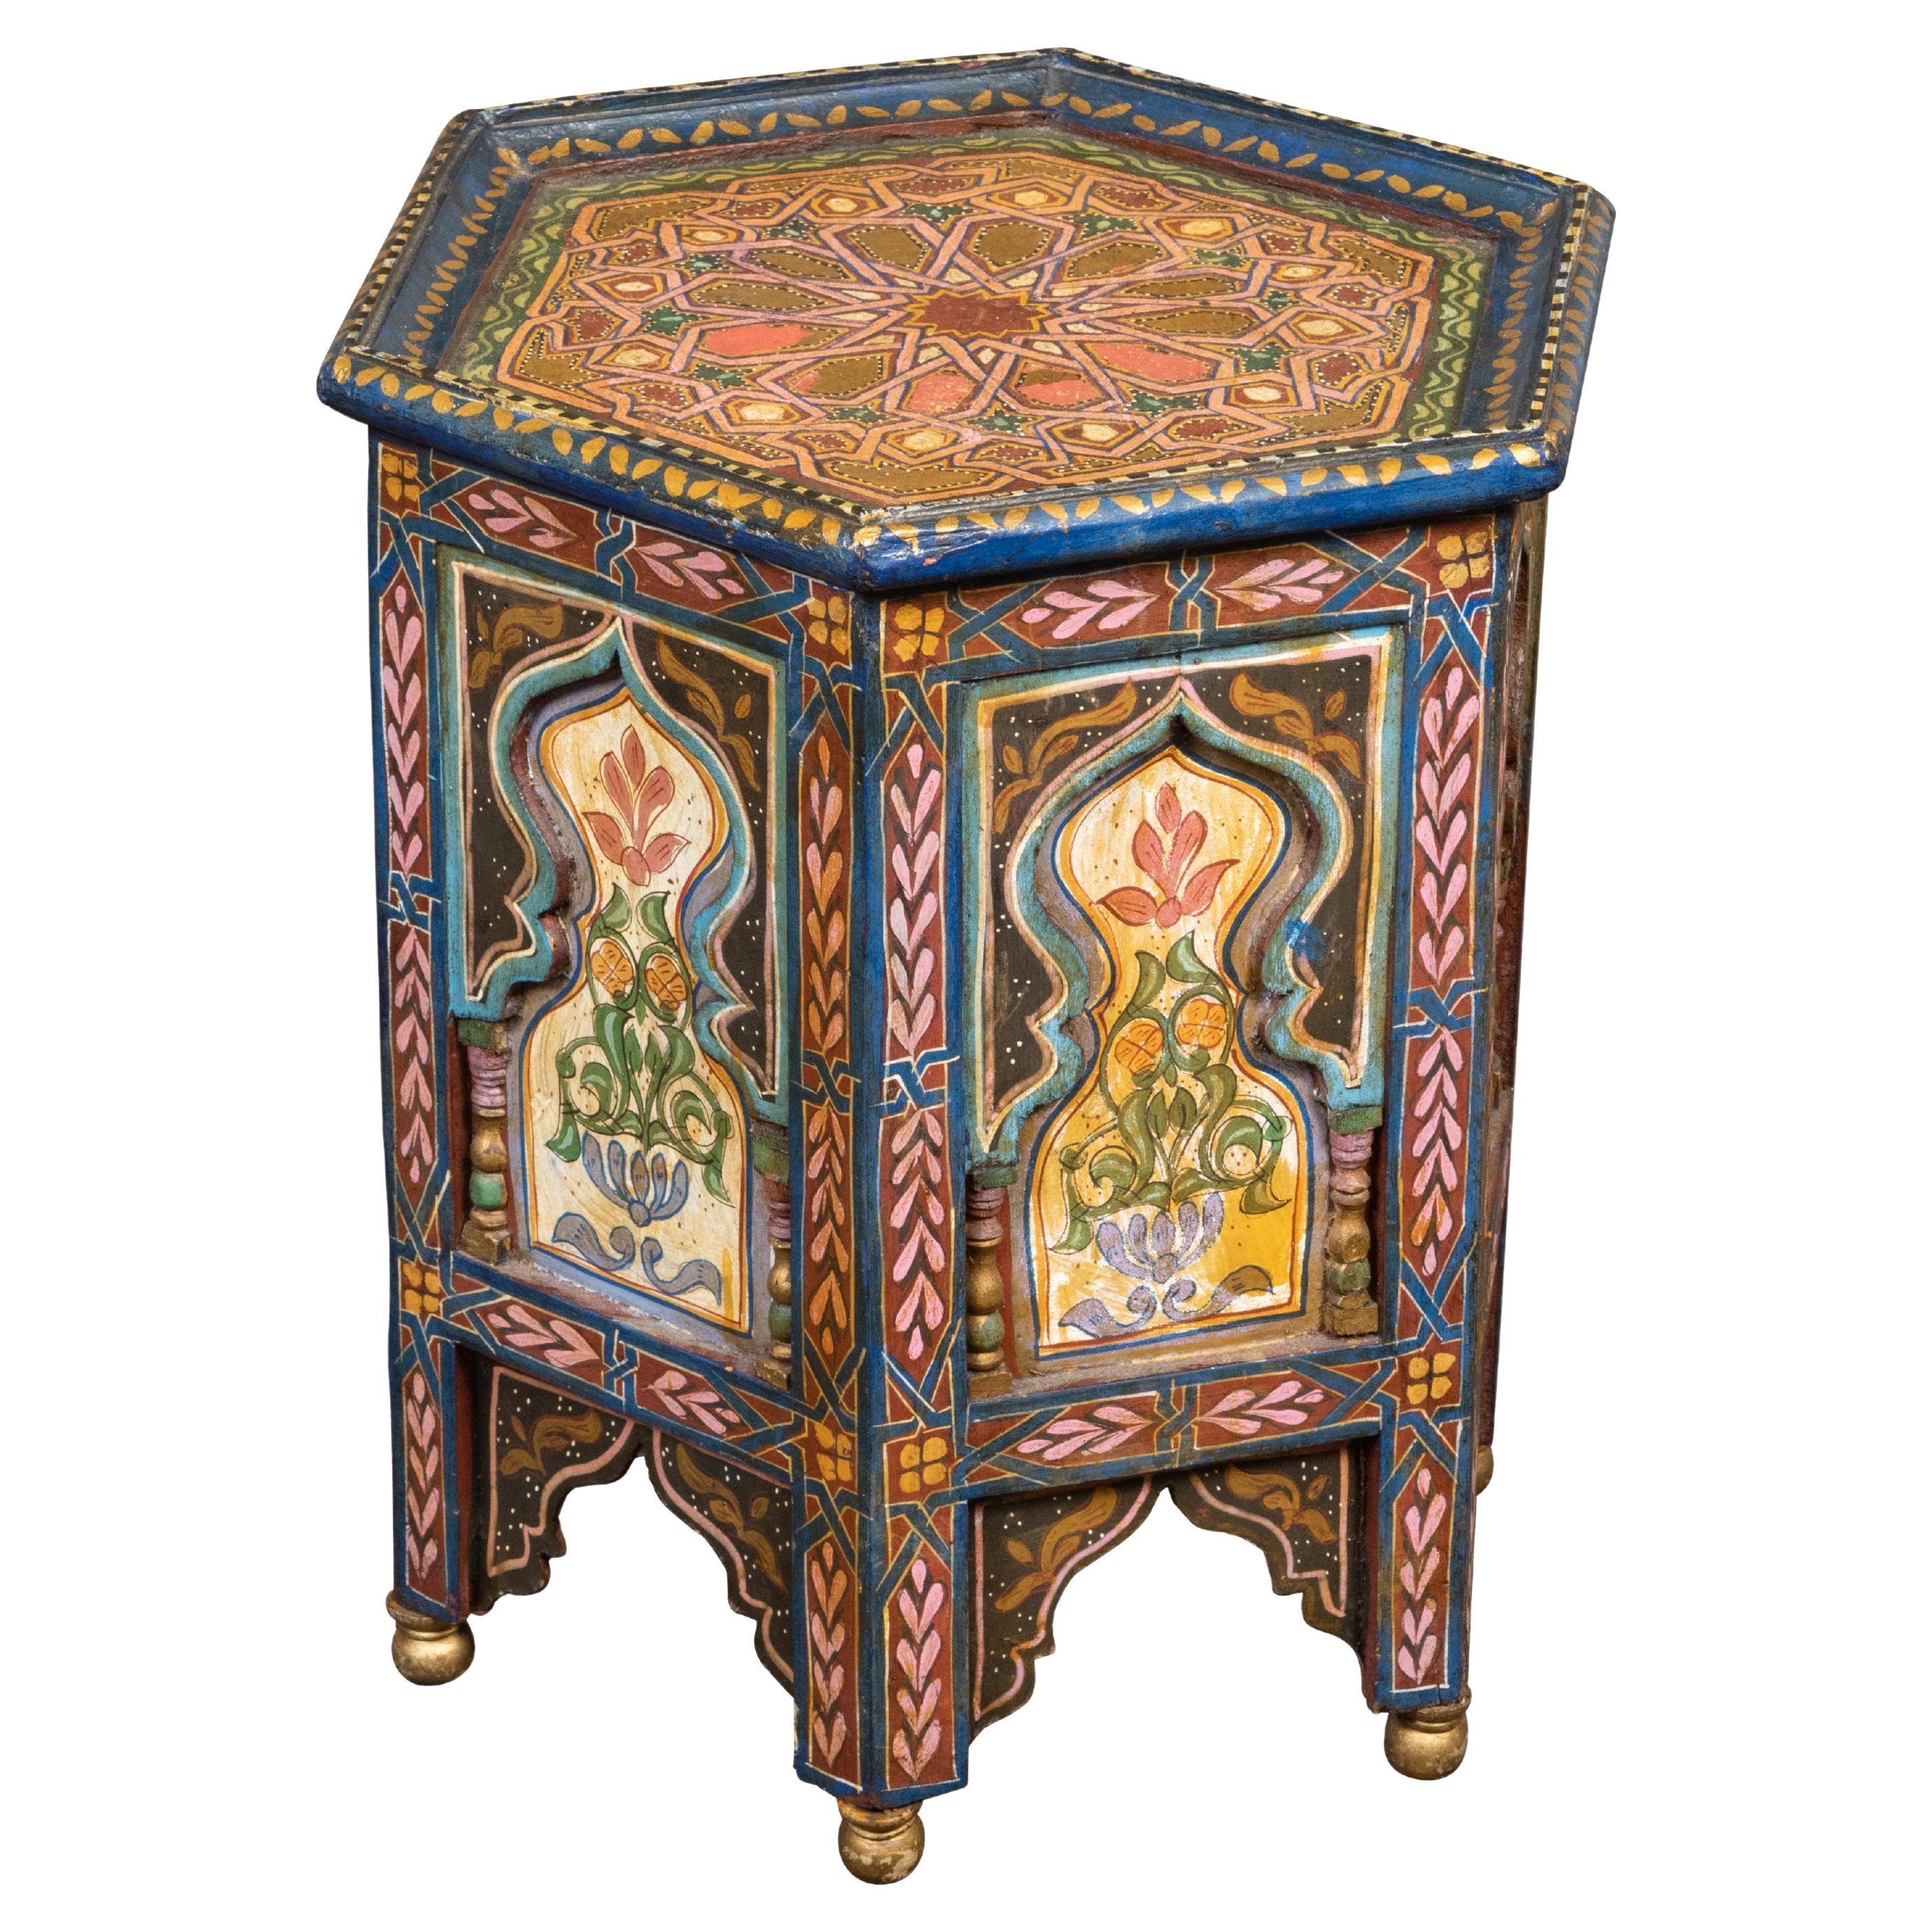 Marokkanischer Tisch im maurischen Stil der 1920er Jahre mit sechseckiger Platte und polychromem Dekor